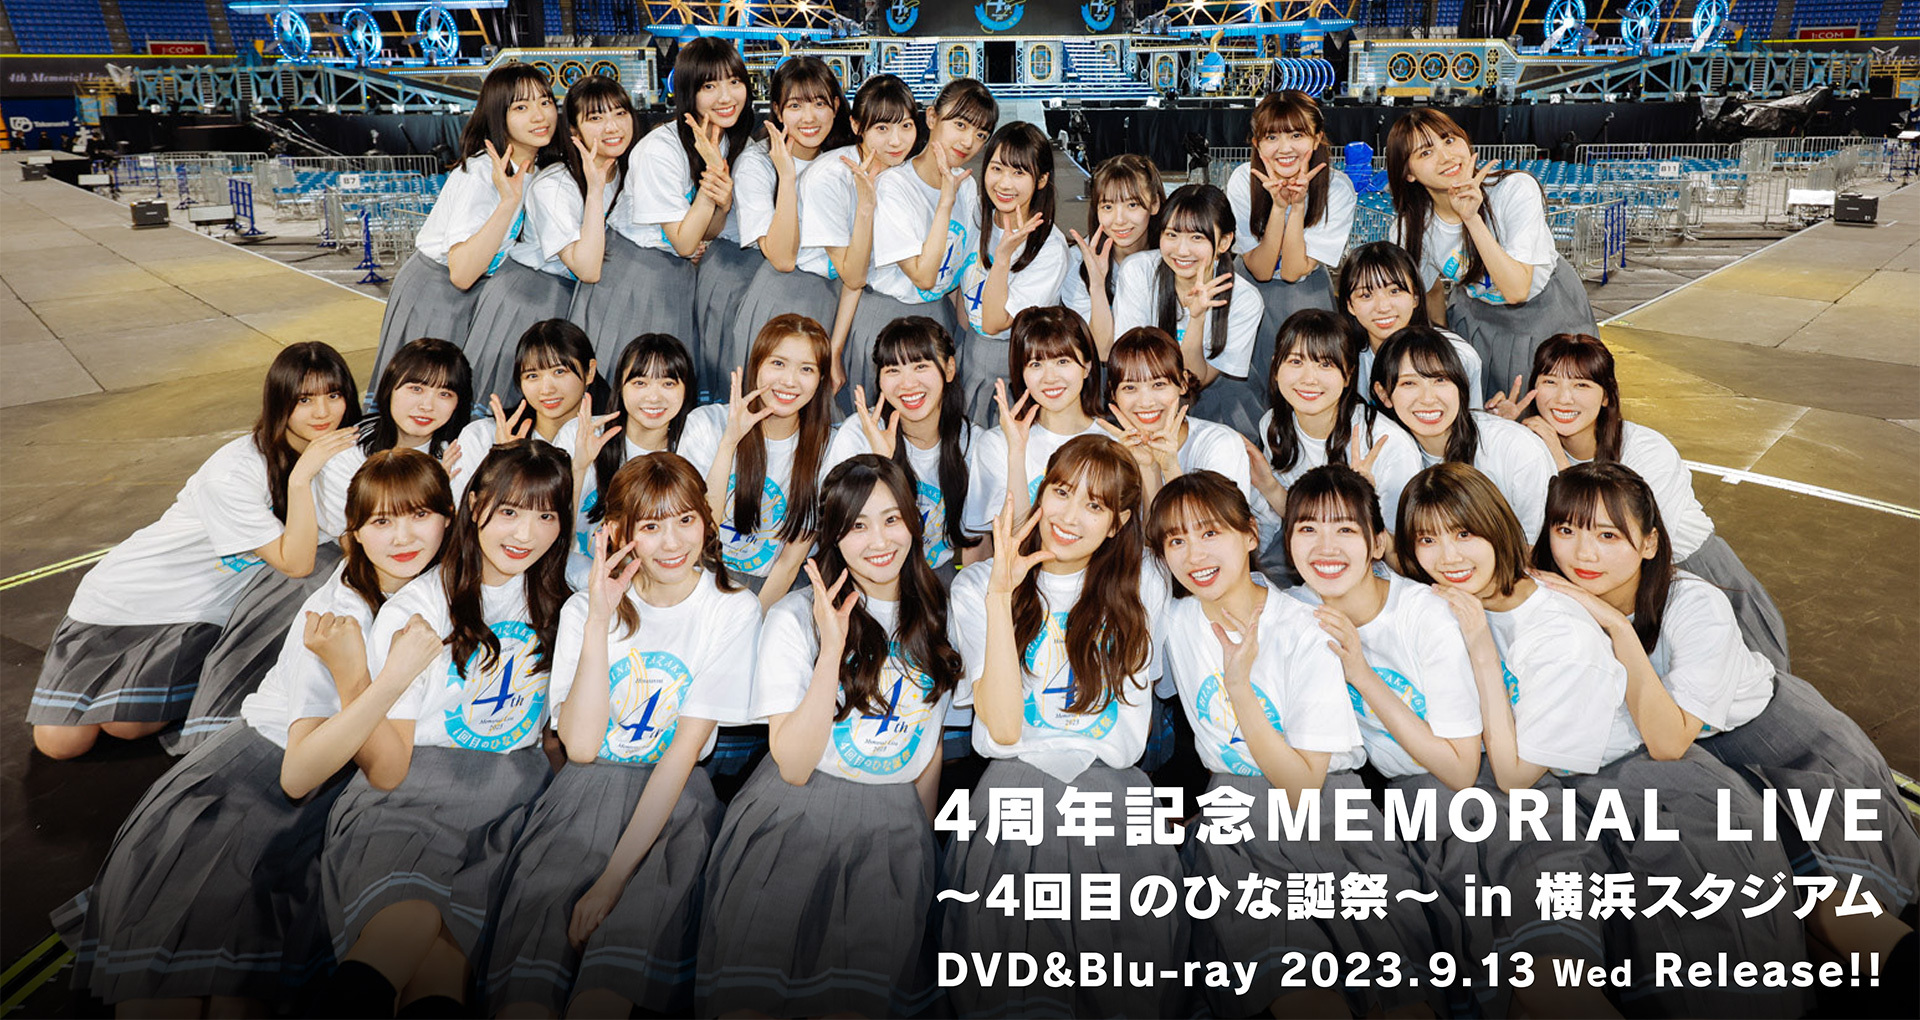 日向坂46 DVD&Blu-ray『4周年記念MEMORIAL LIVE ～4回目のひな誕祭～』in 横浜スタジアム